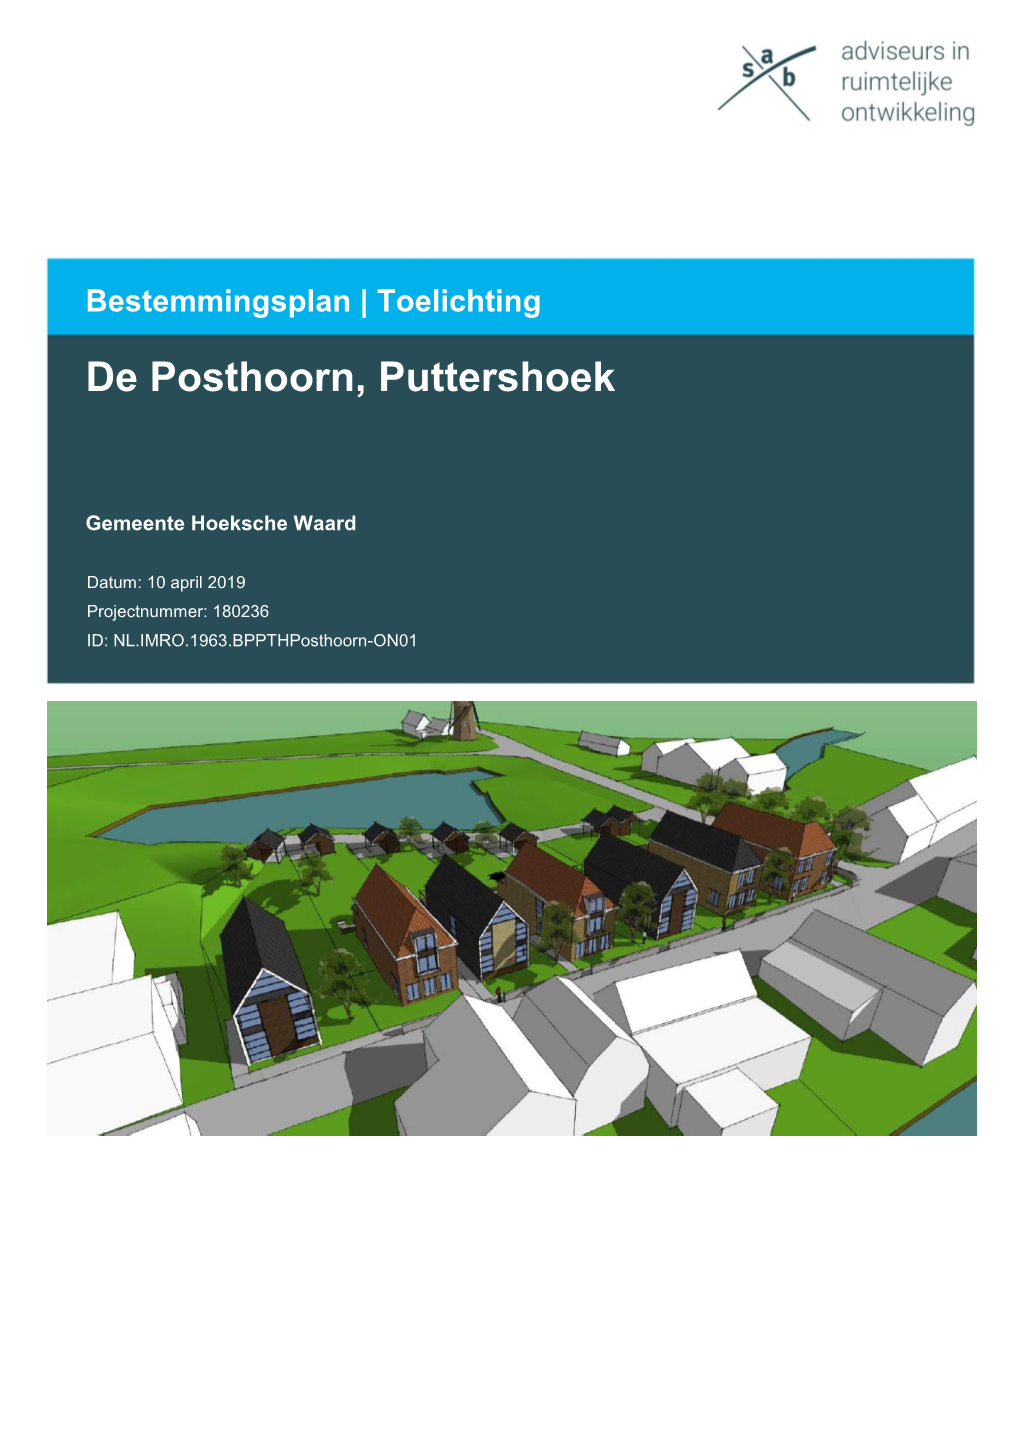 De Posthoorn, Puttershoek